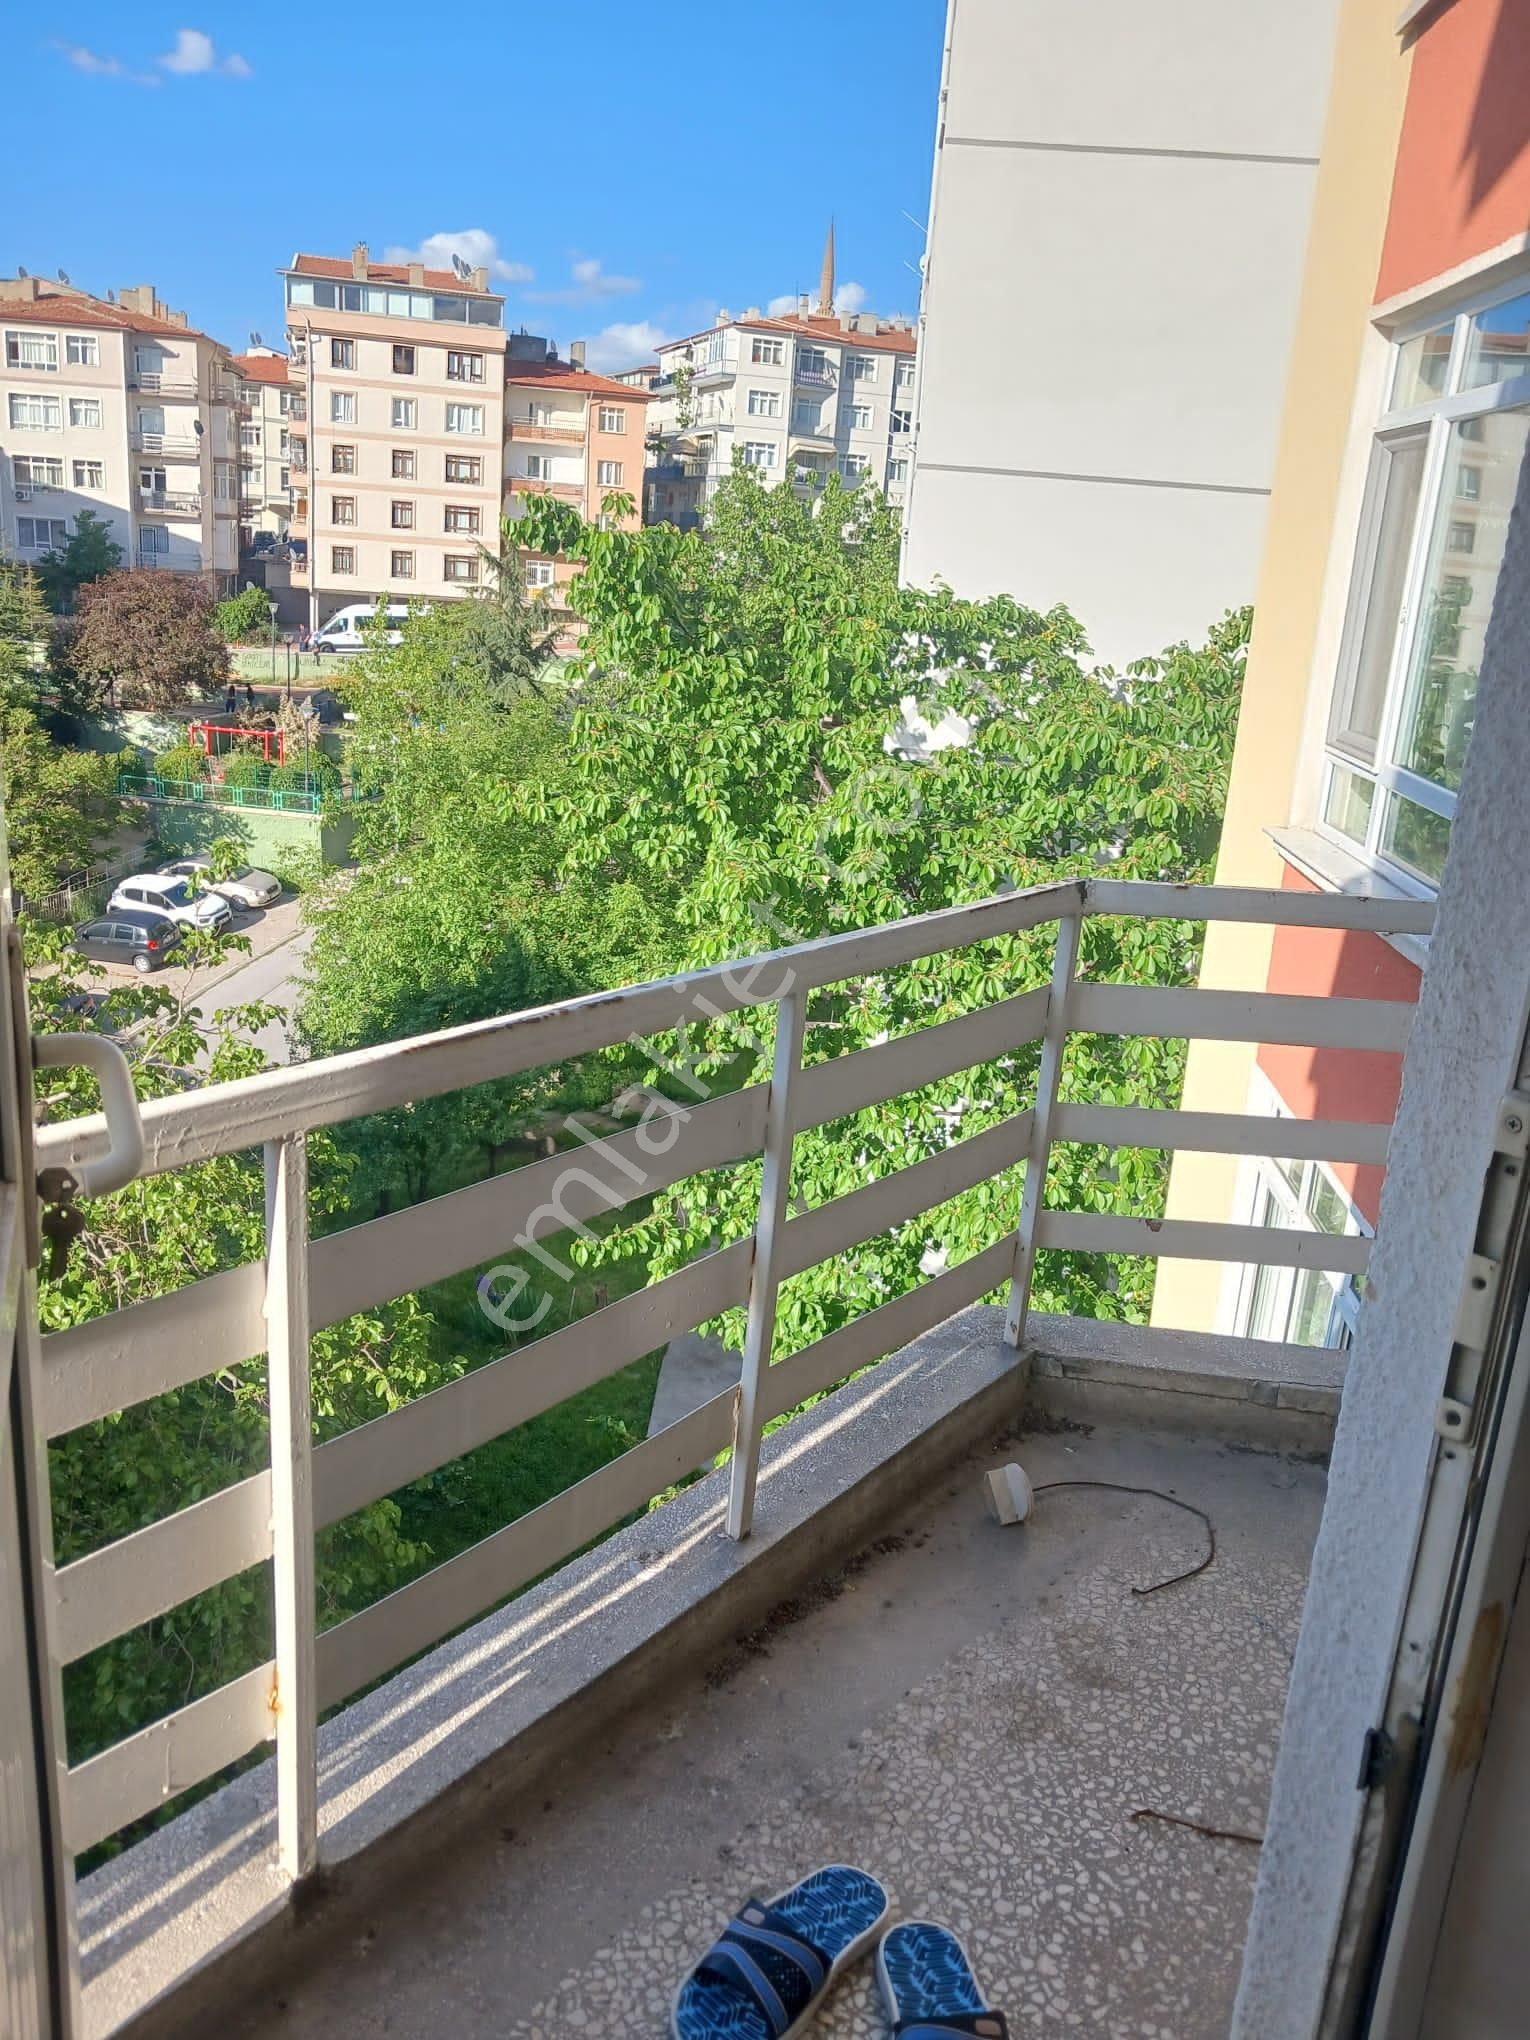 Çankaya Ertuğrulgazi Satılık Daire  Cebecide Katta Düz Giriş Önü Açık Manzaralı 2 Balkonlu